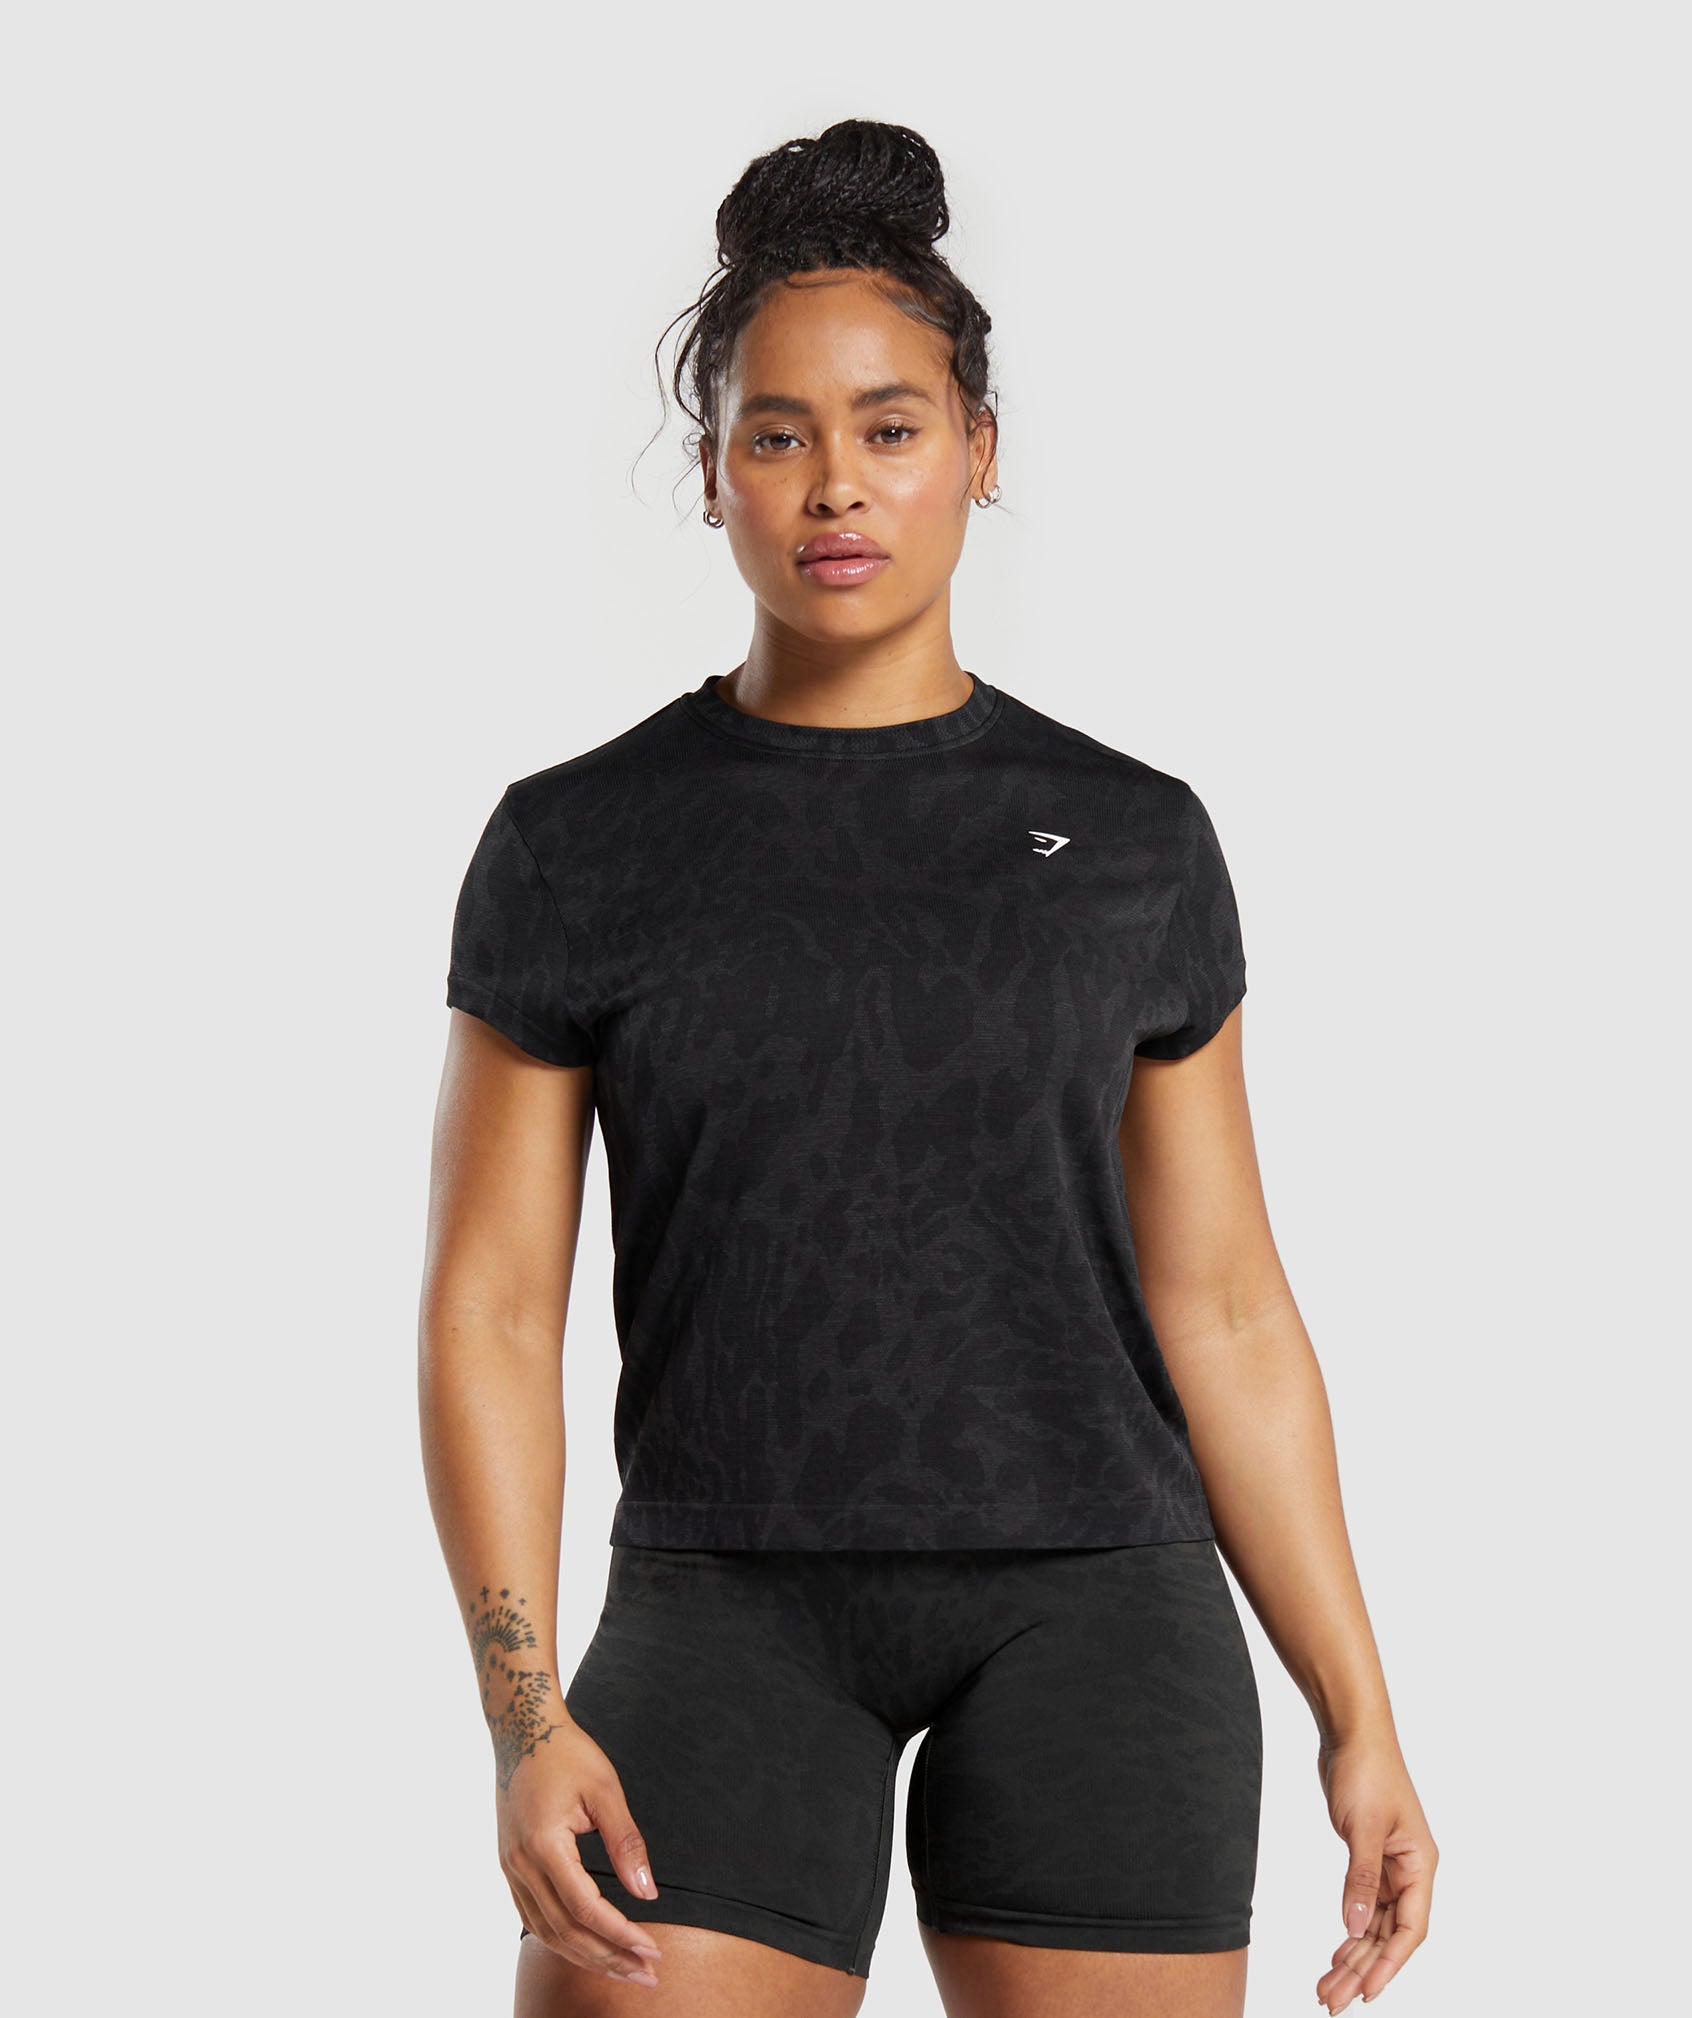 Adapt Safari Seamless T-Shirt in Black/Asphalt Grey